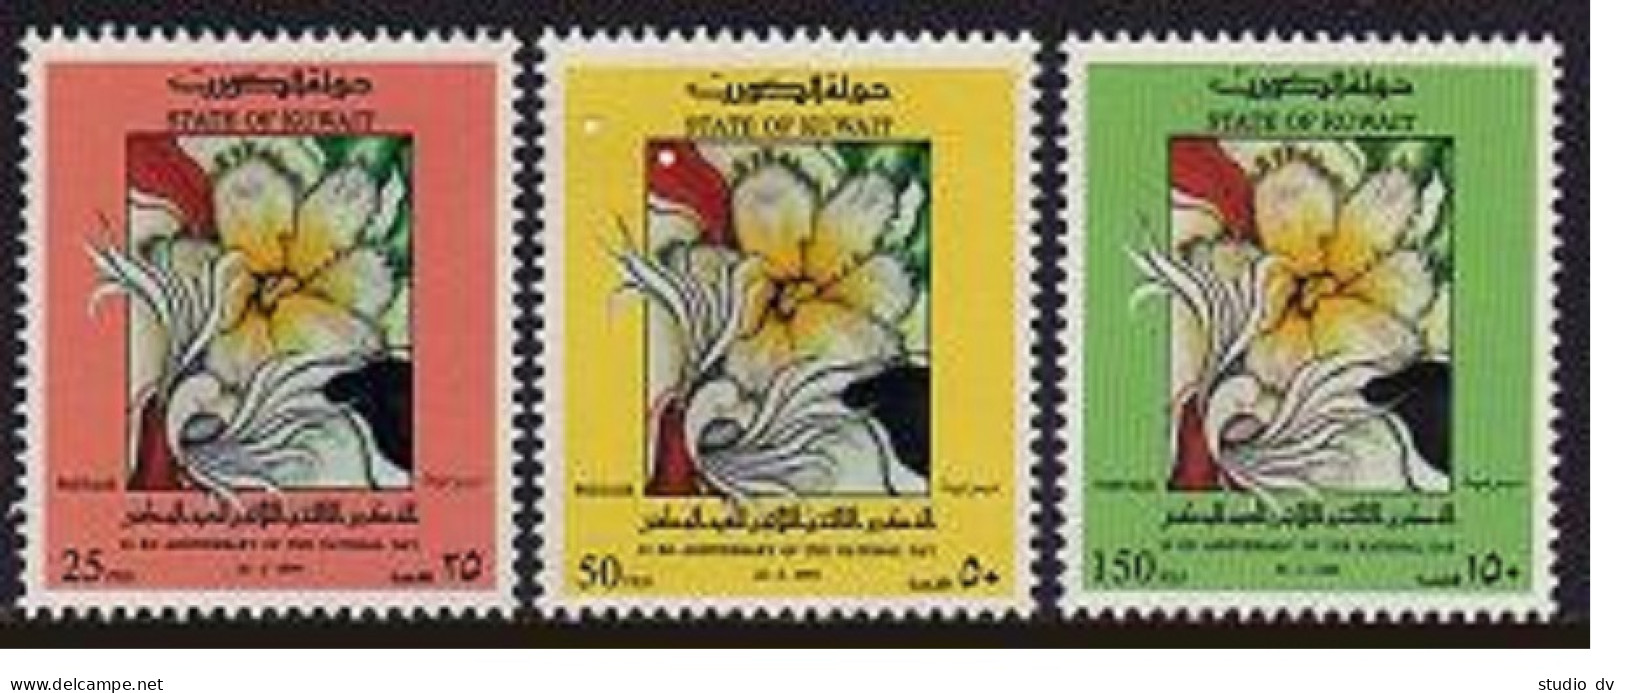 Kuwait 1225-1227, MNH. Michel 1357-1359. 33rd National Day, 1994. Flowers. - Kuwait